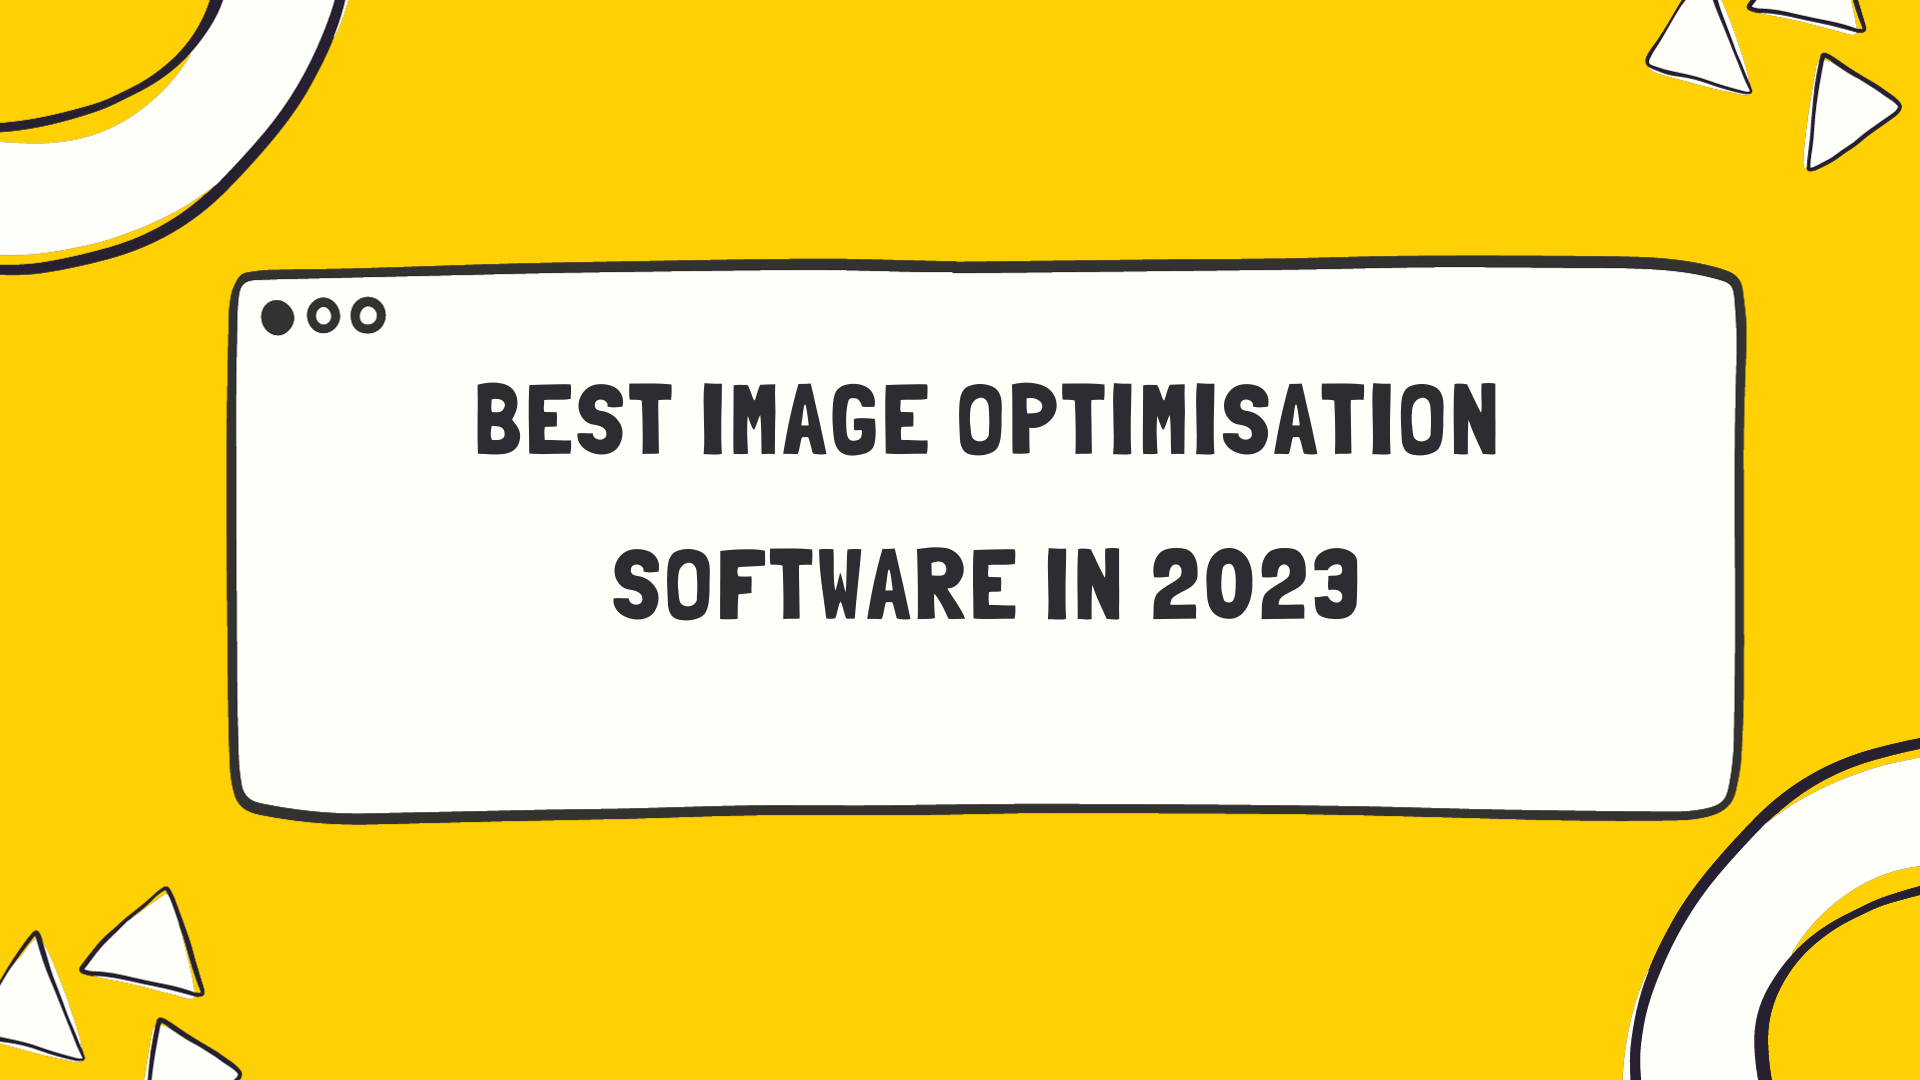 Image Optimisation Software in 2023